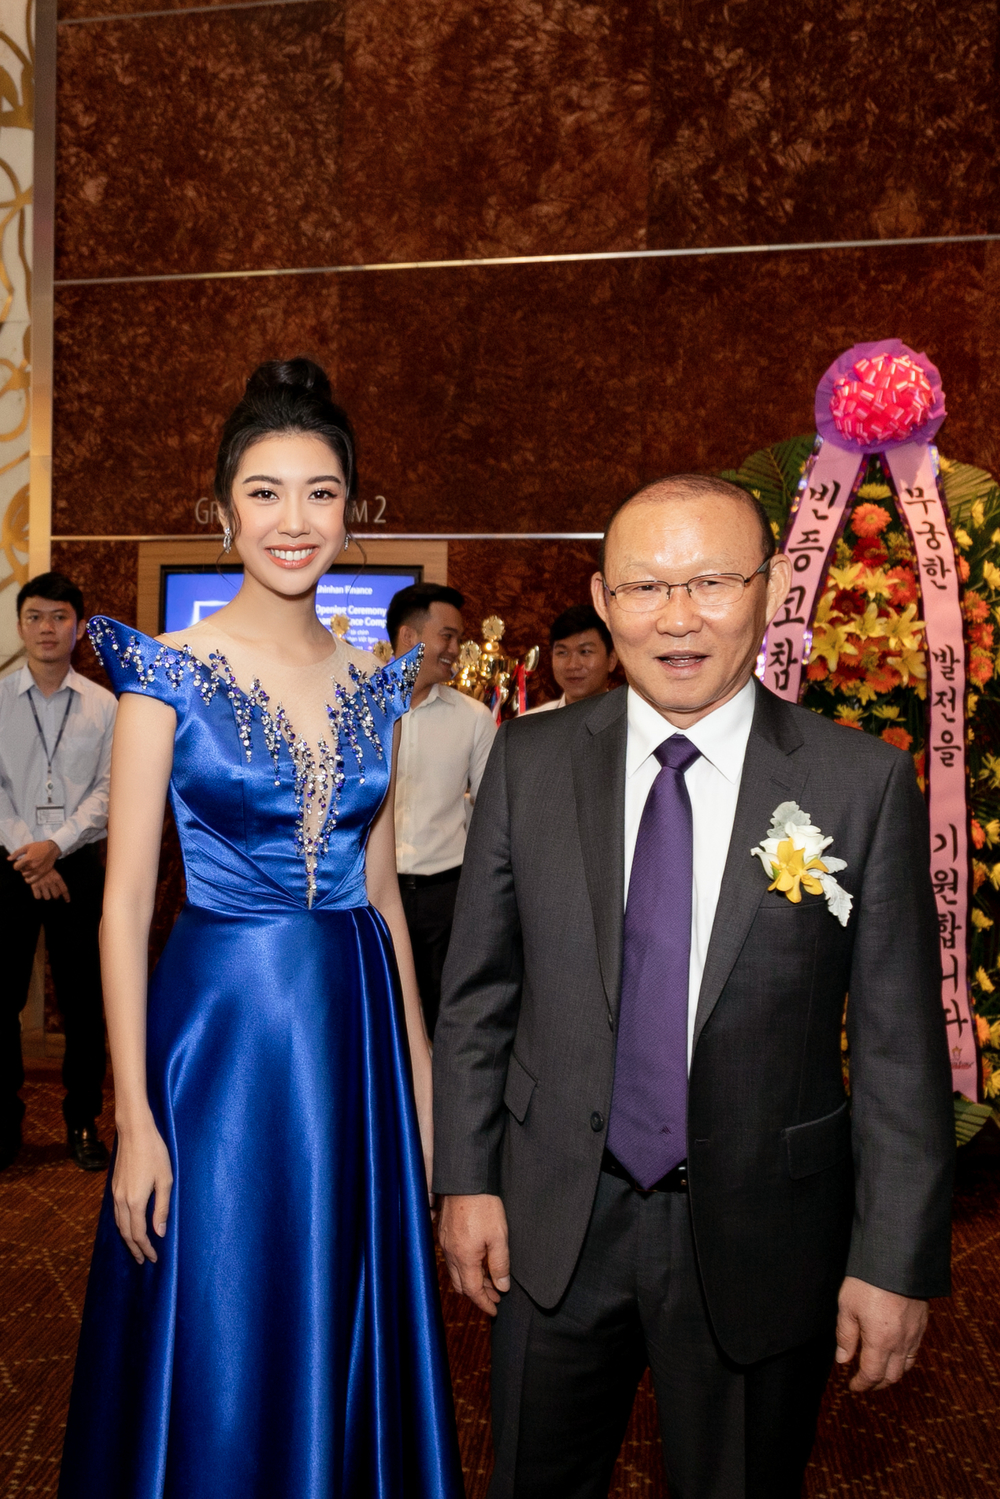 Á hậu Thúy Vân hào hứng khi được gặp gỡ HLV Park Hang Seo - Tin sao Viet - Tin tuc sao Viet - Scandal sao Viet - Tin tuc cua Sao - Tin cua Sao